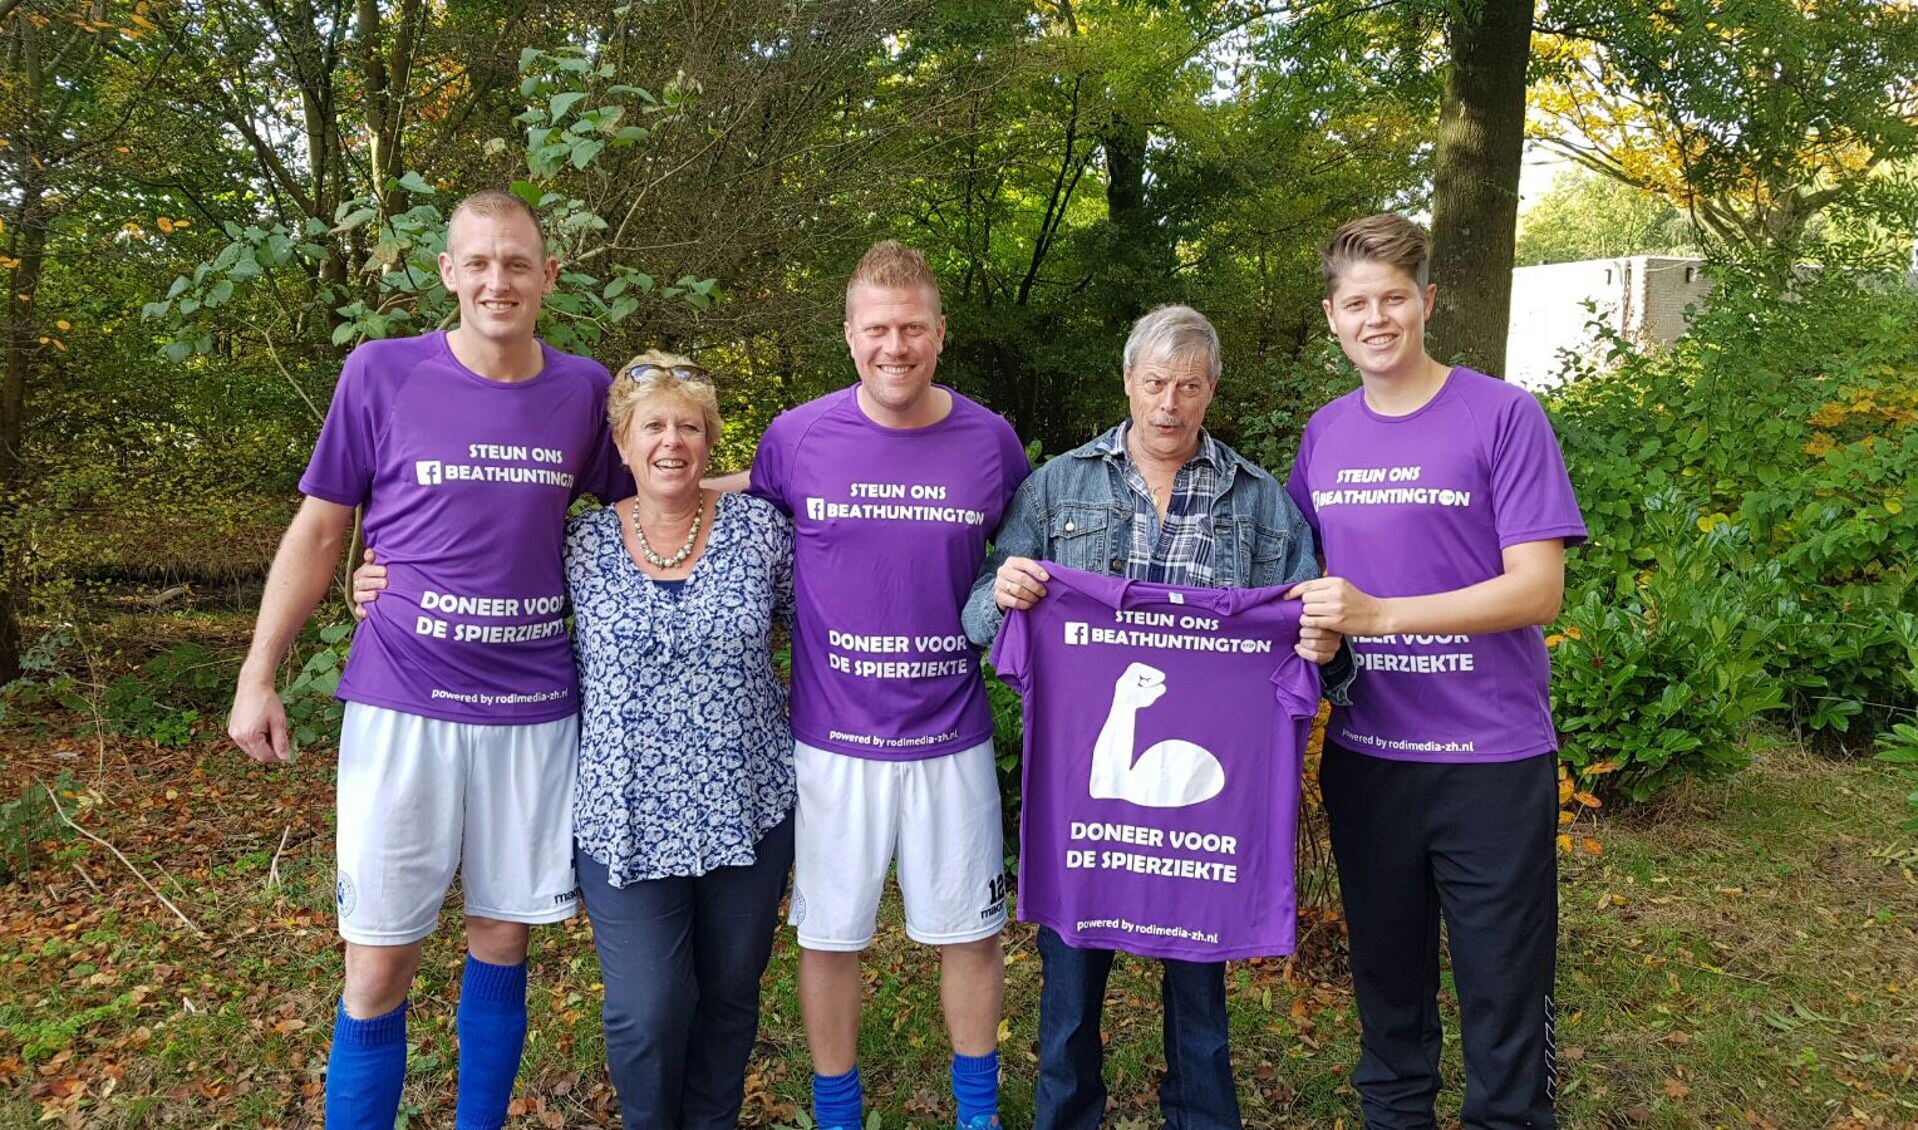 Bas de Graaff, Olga, Rick en Martin van Eden en Jori Noordhoek (v.l.n.r.) in de speciale shirts waarmee zich hardlopend voor het goede doel gaan inzetten. 